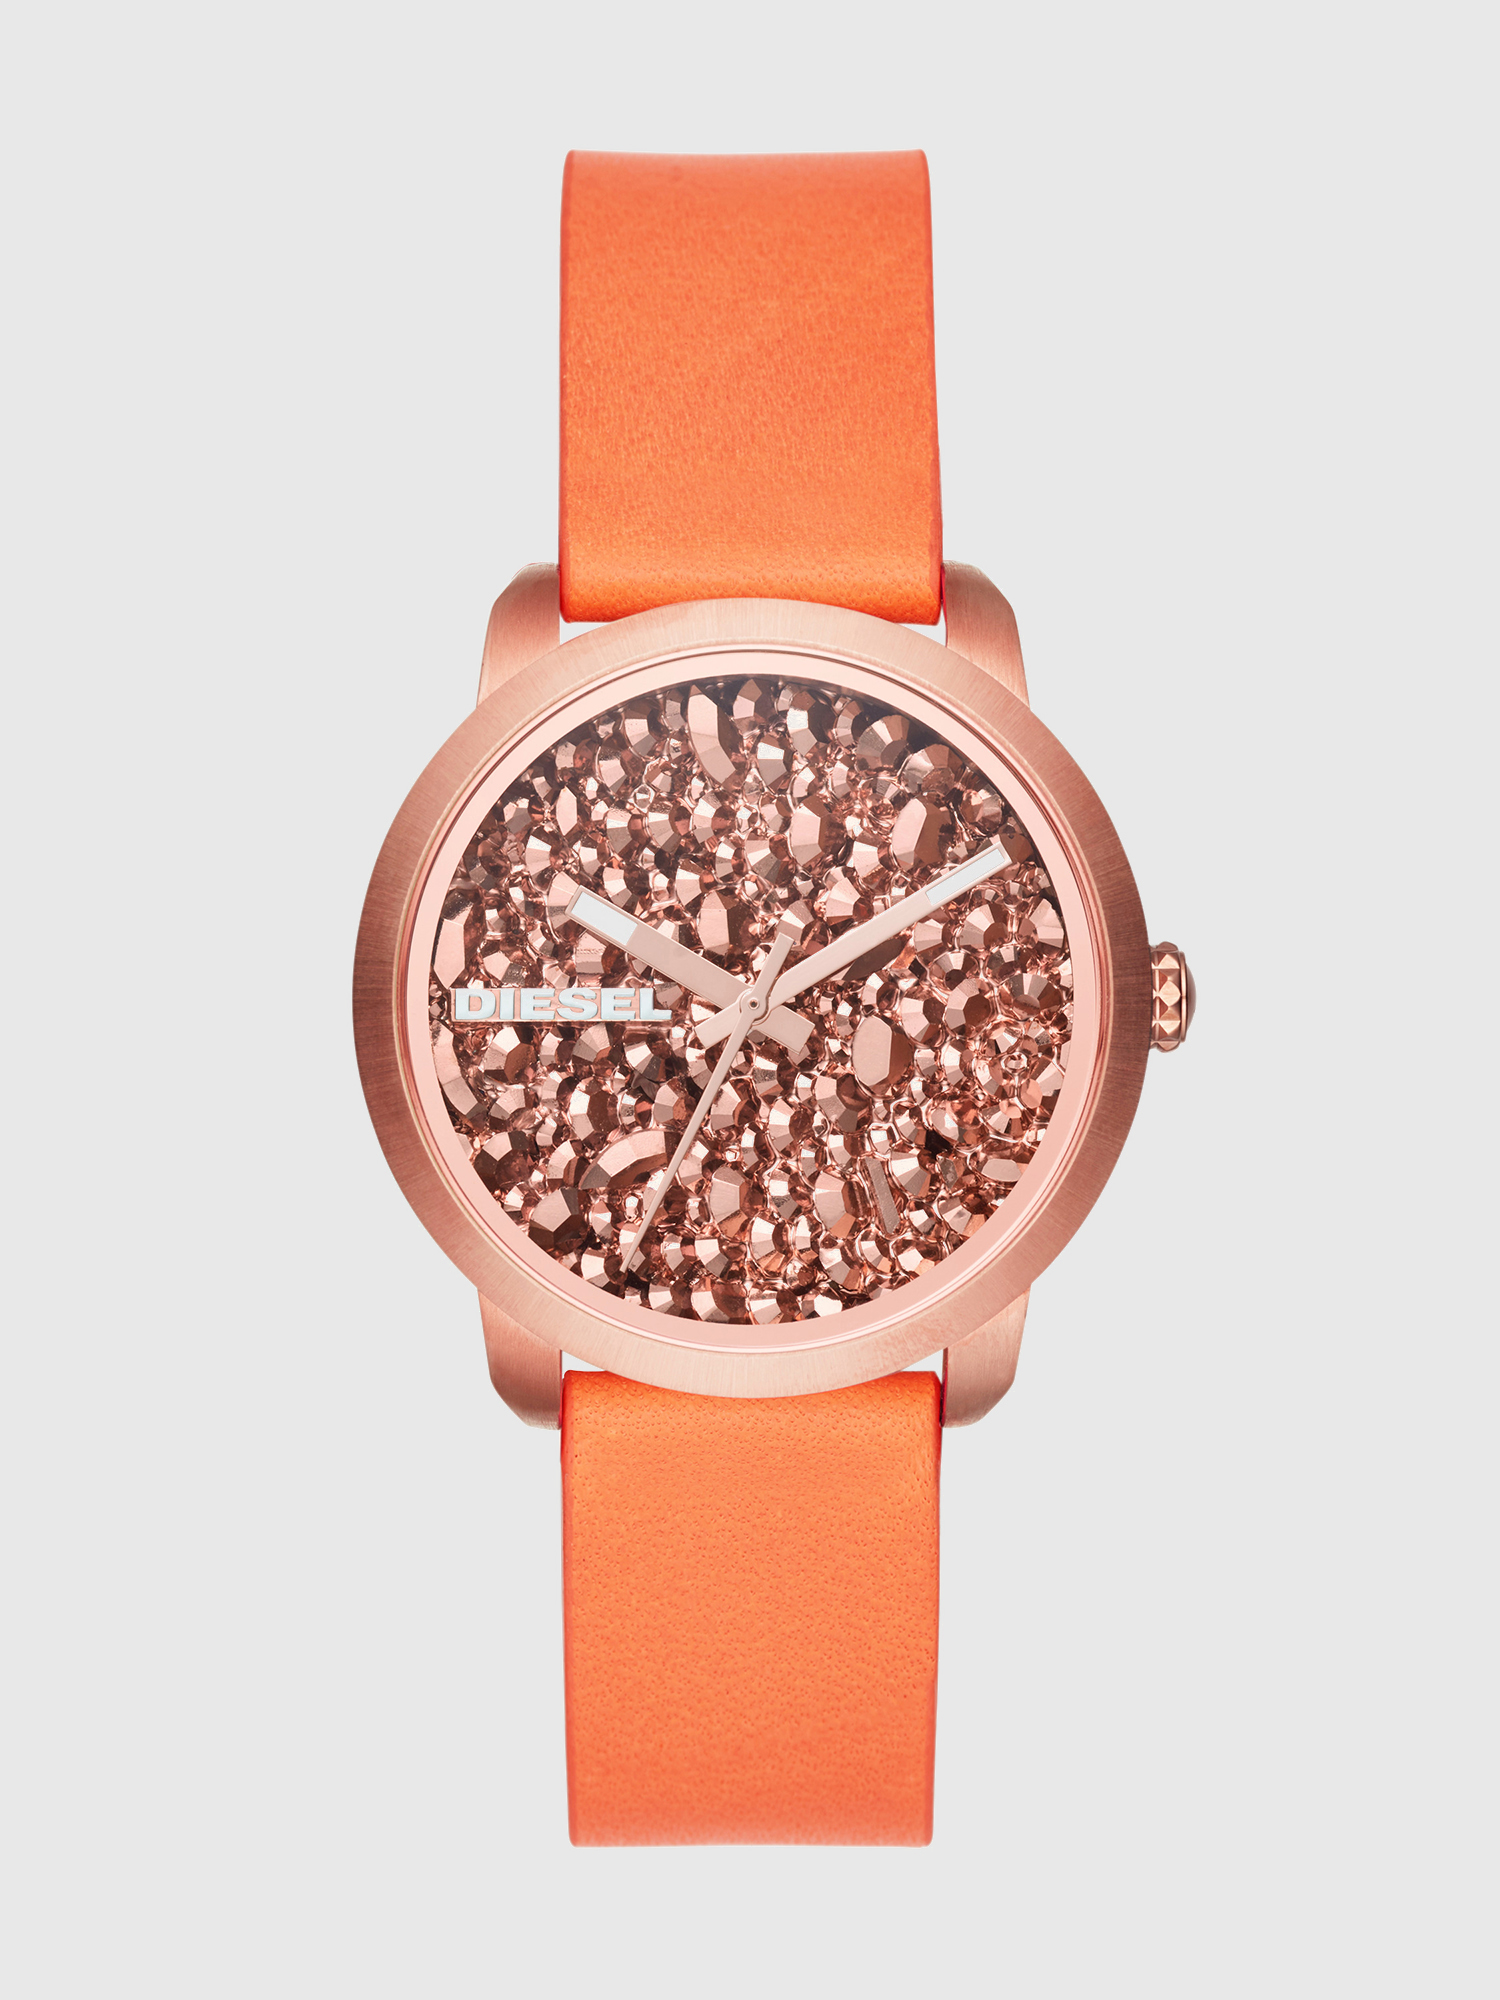 DZ5552 Woman: Flare Rocks orange watch w/rose rocks, 38 mm | Diesel